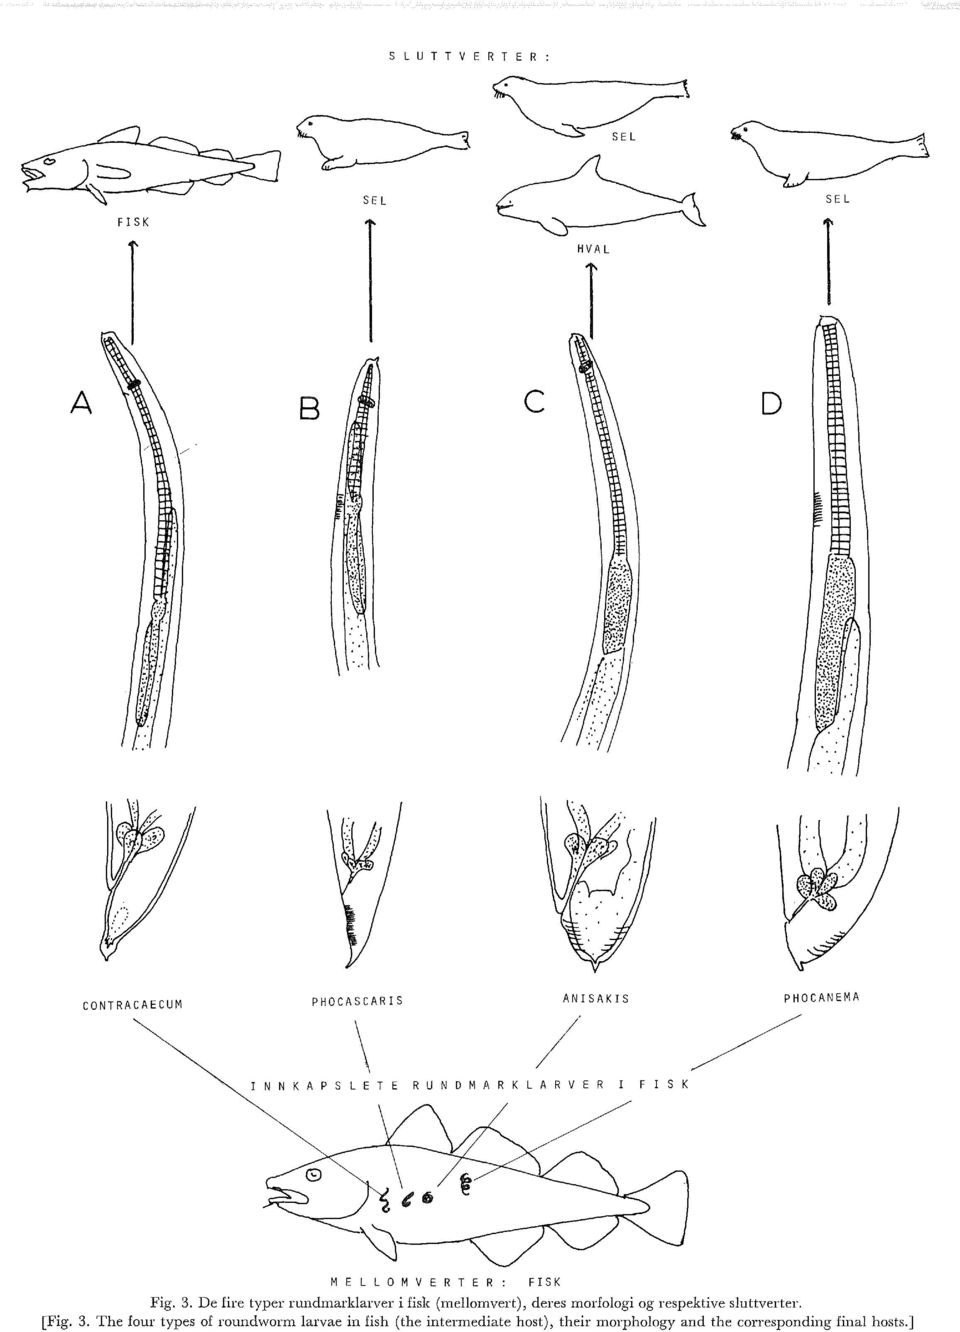 De fire typer rundmarkarver i fisk (meomvert), deres morfoogi og respektive suttverter. [Fig. 3.